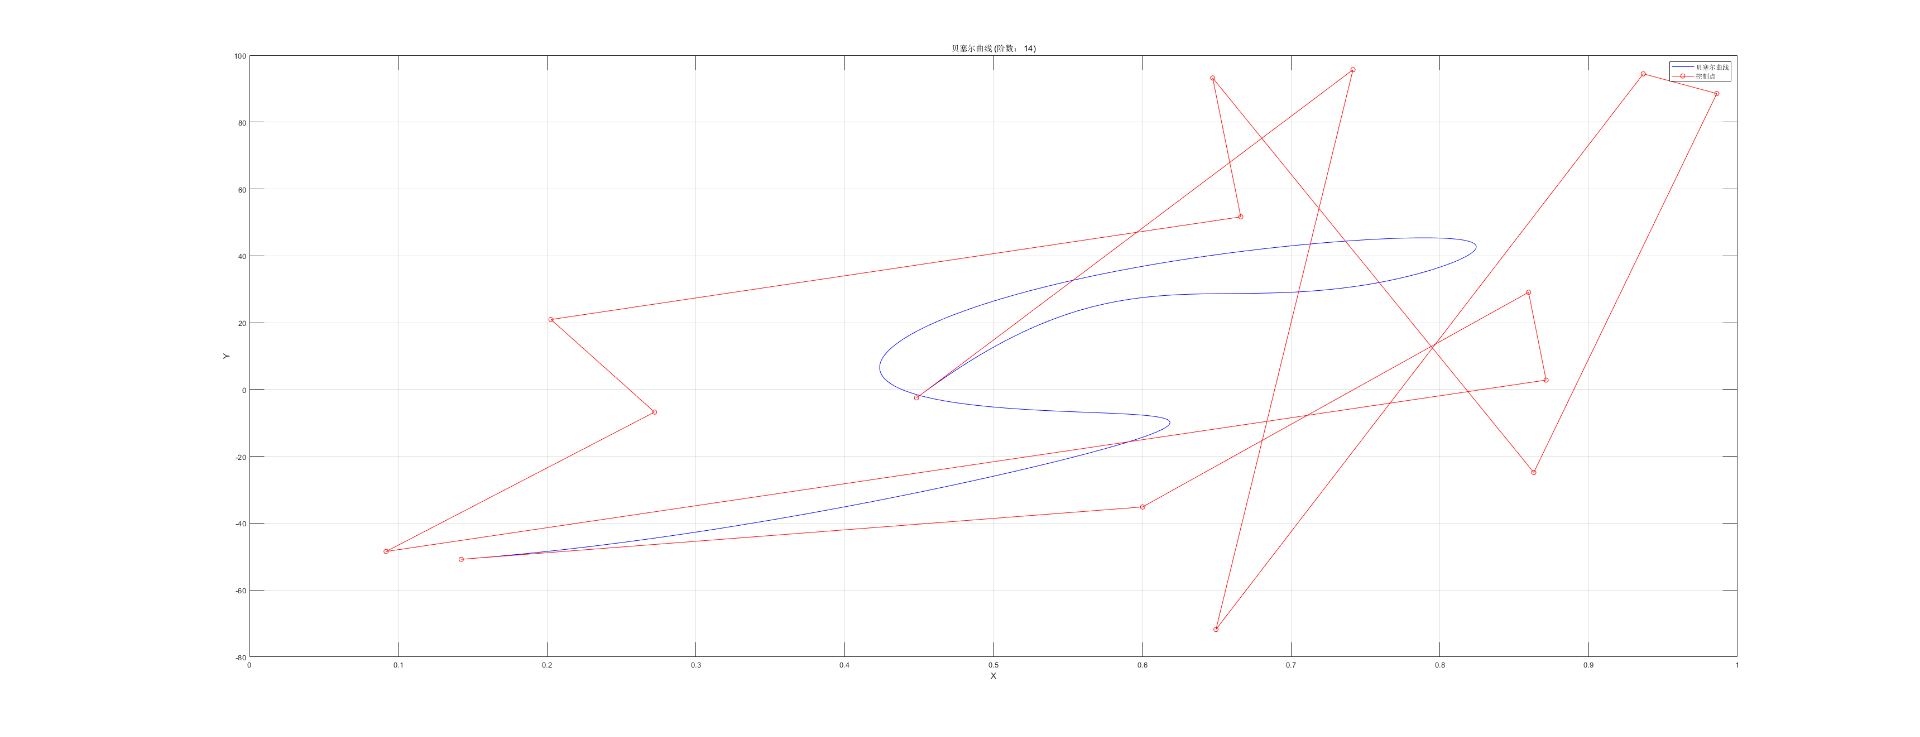 贝塞尔曲线原理、推导及Matlab实现